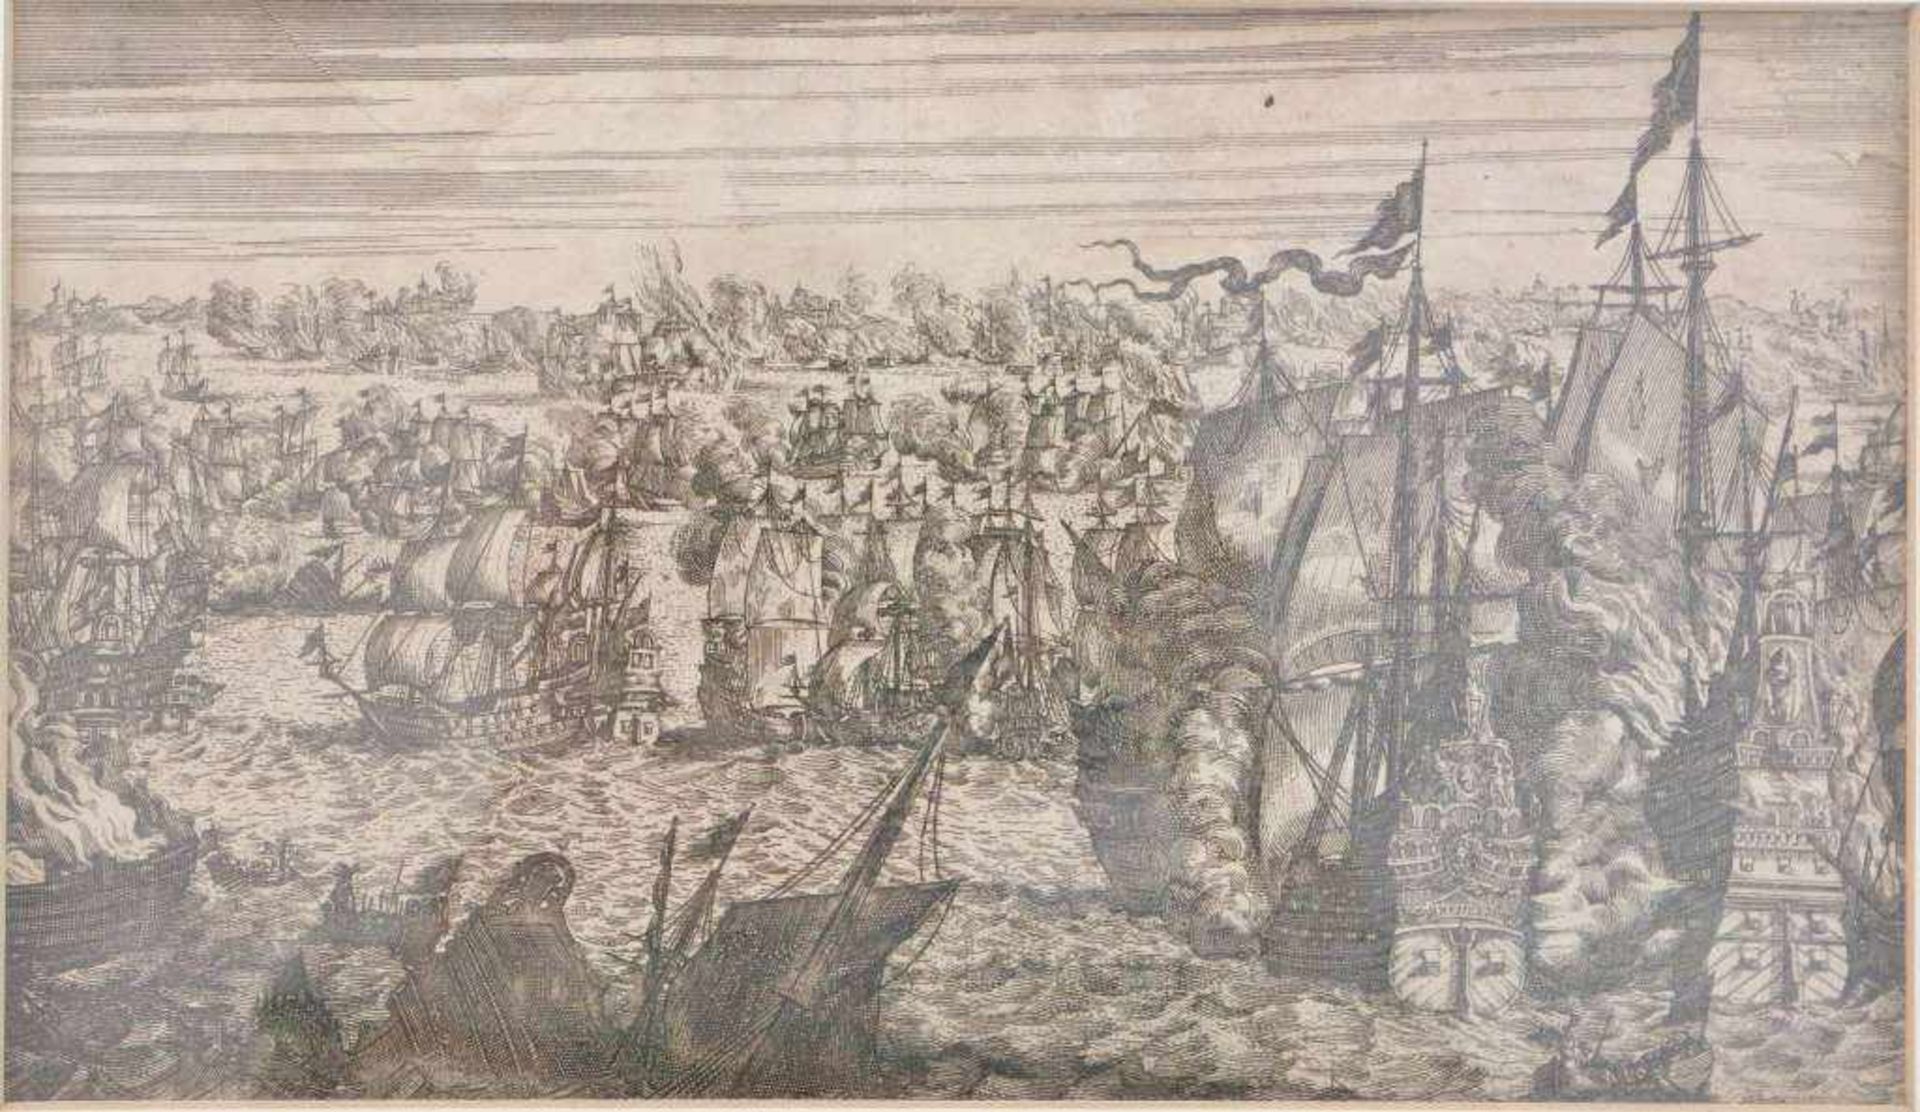 Kupferstich, 17. Jh., Darstellung einer Seeschlacht, vermutlich zwischen Spaniern und Holländern,